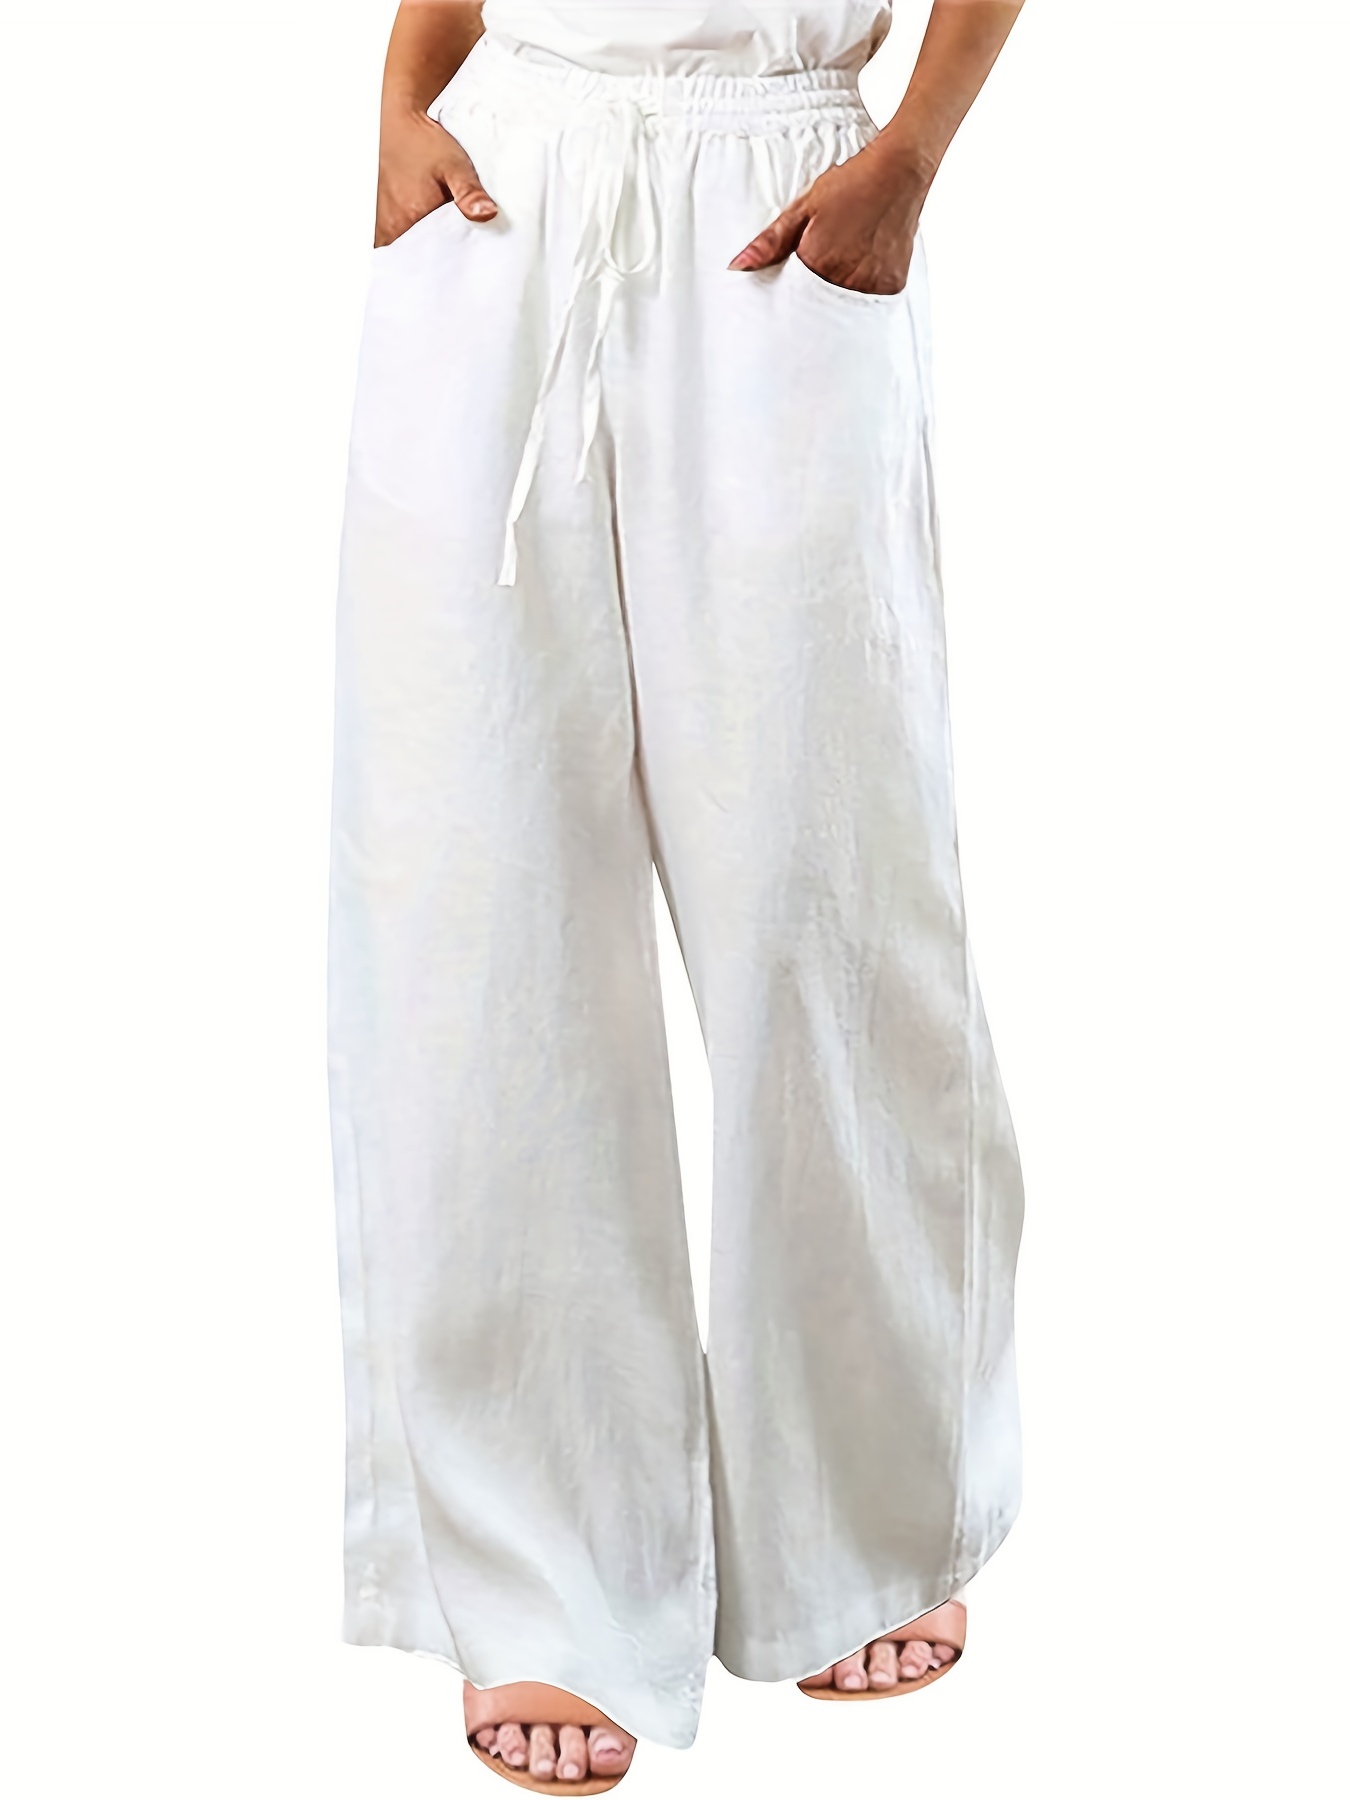 Comprar Primavera y Verano Pantalones Casuales de Mujer Pantalones Sueltos  de Lino de algodón Pantalones Casuales Pantalones Harem Pantalones Largos